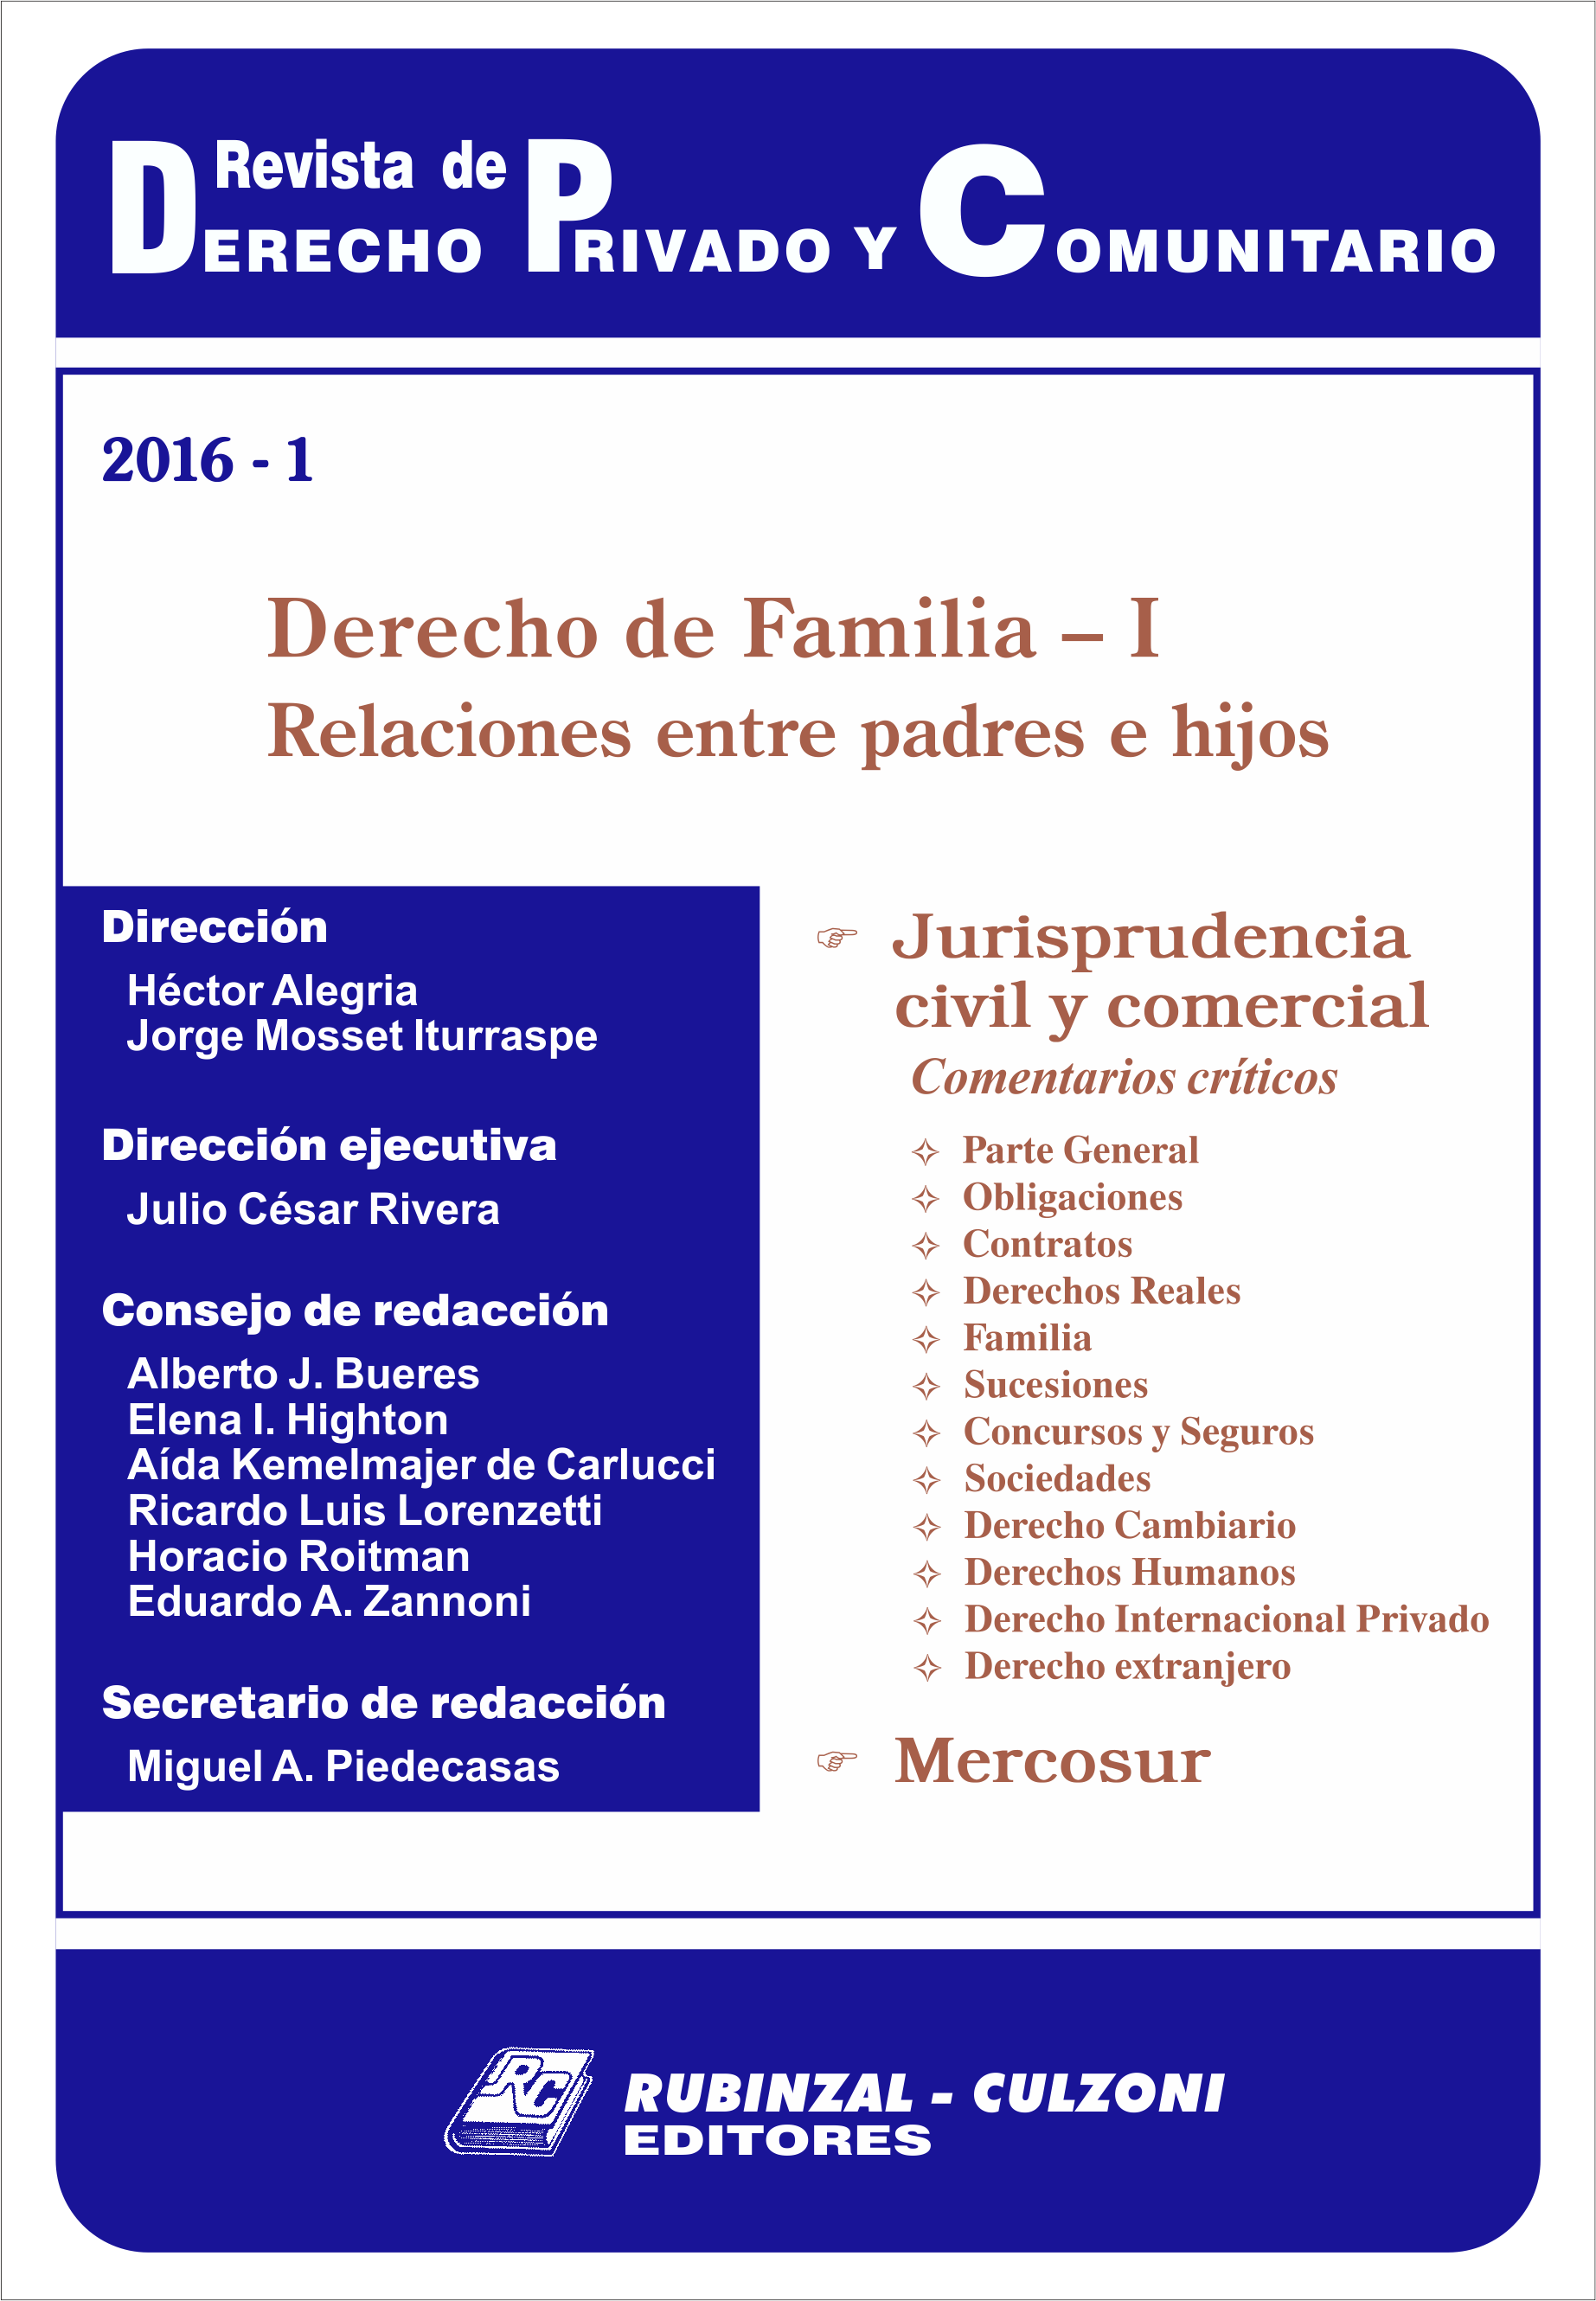 Revista de Derecho Privado y Comunitario - Derecho de Familia - I. Relaciones entre padres e hijos